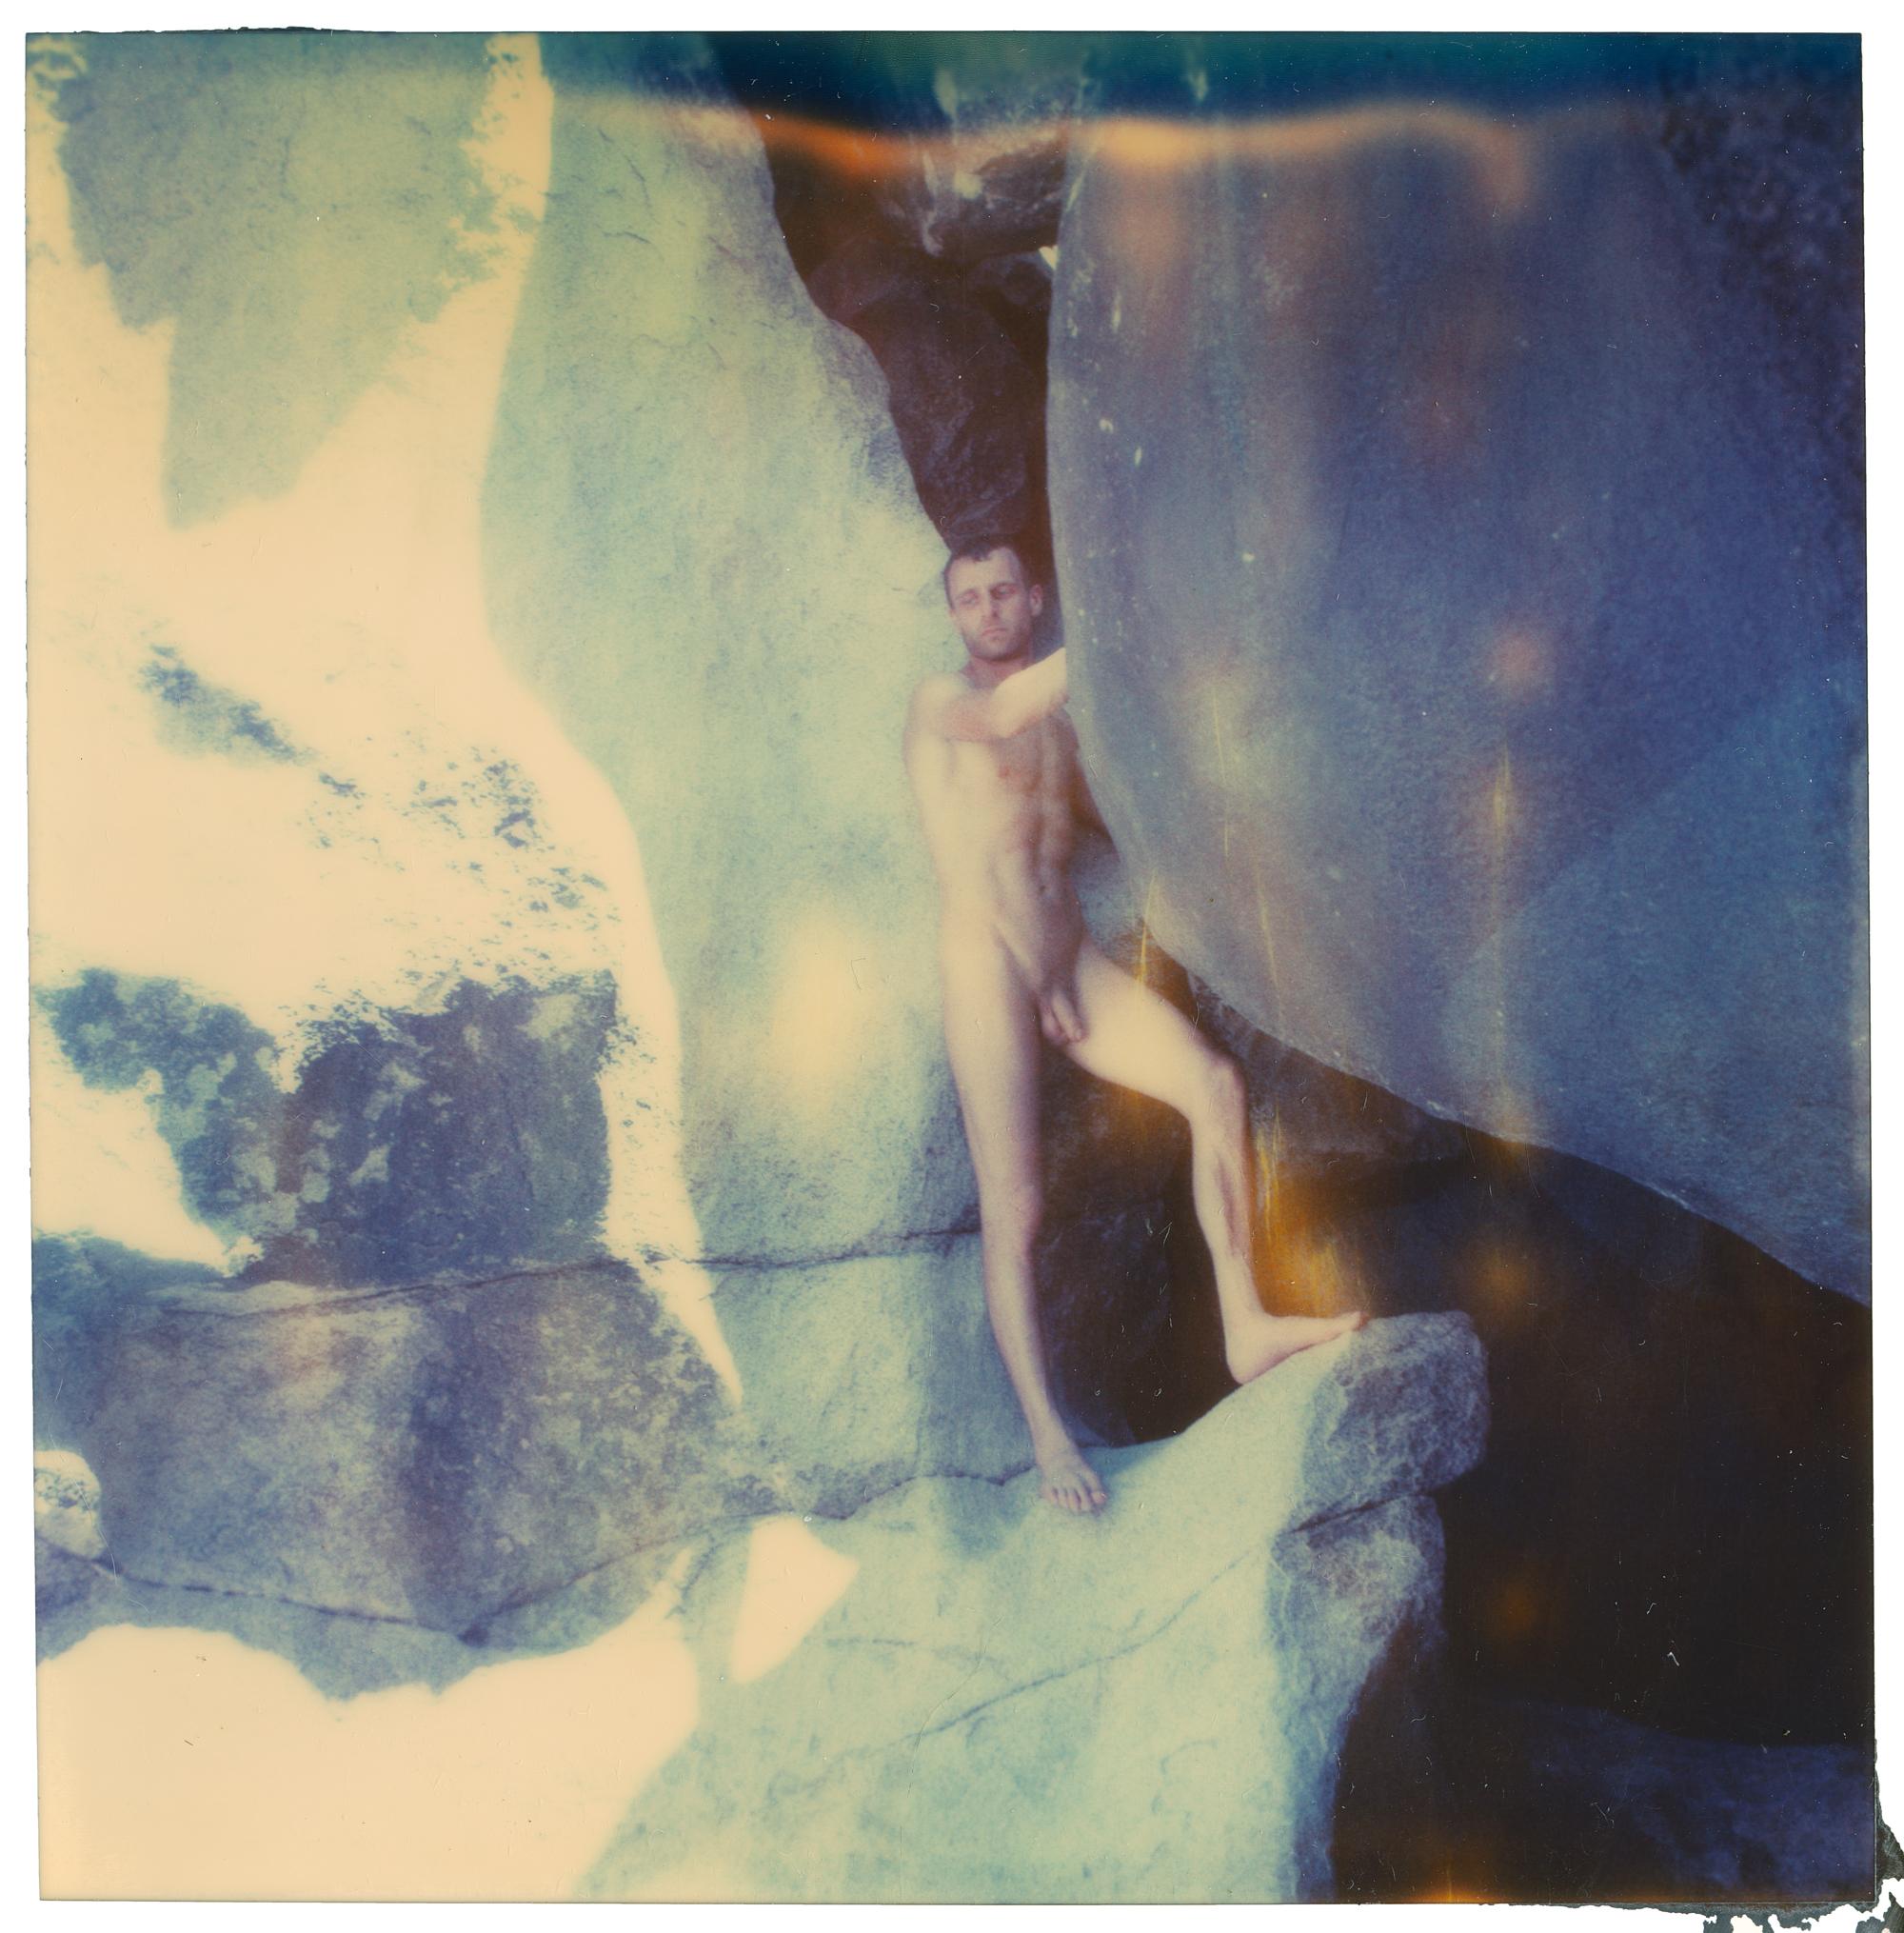 Stefanie Schneider Figurative Photograph – The Cave 02 – Planet der Affen 11 – 21. Jahrhundert, Polaroid, Abstrakt